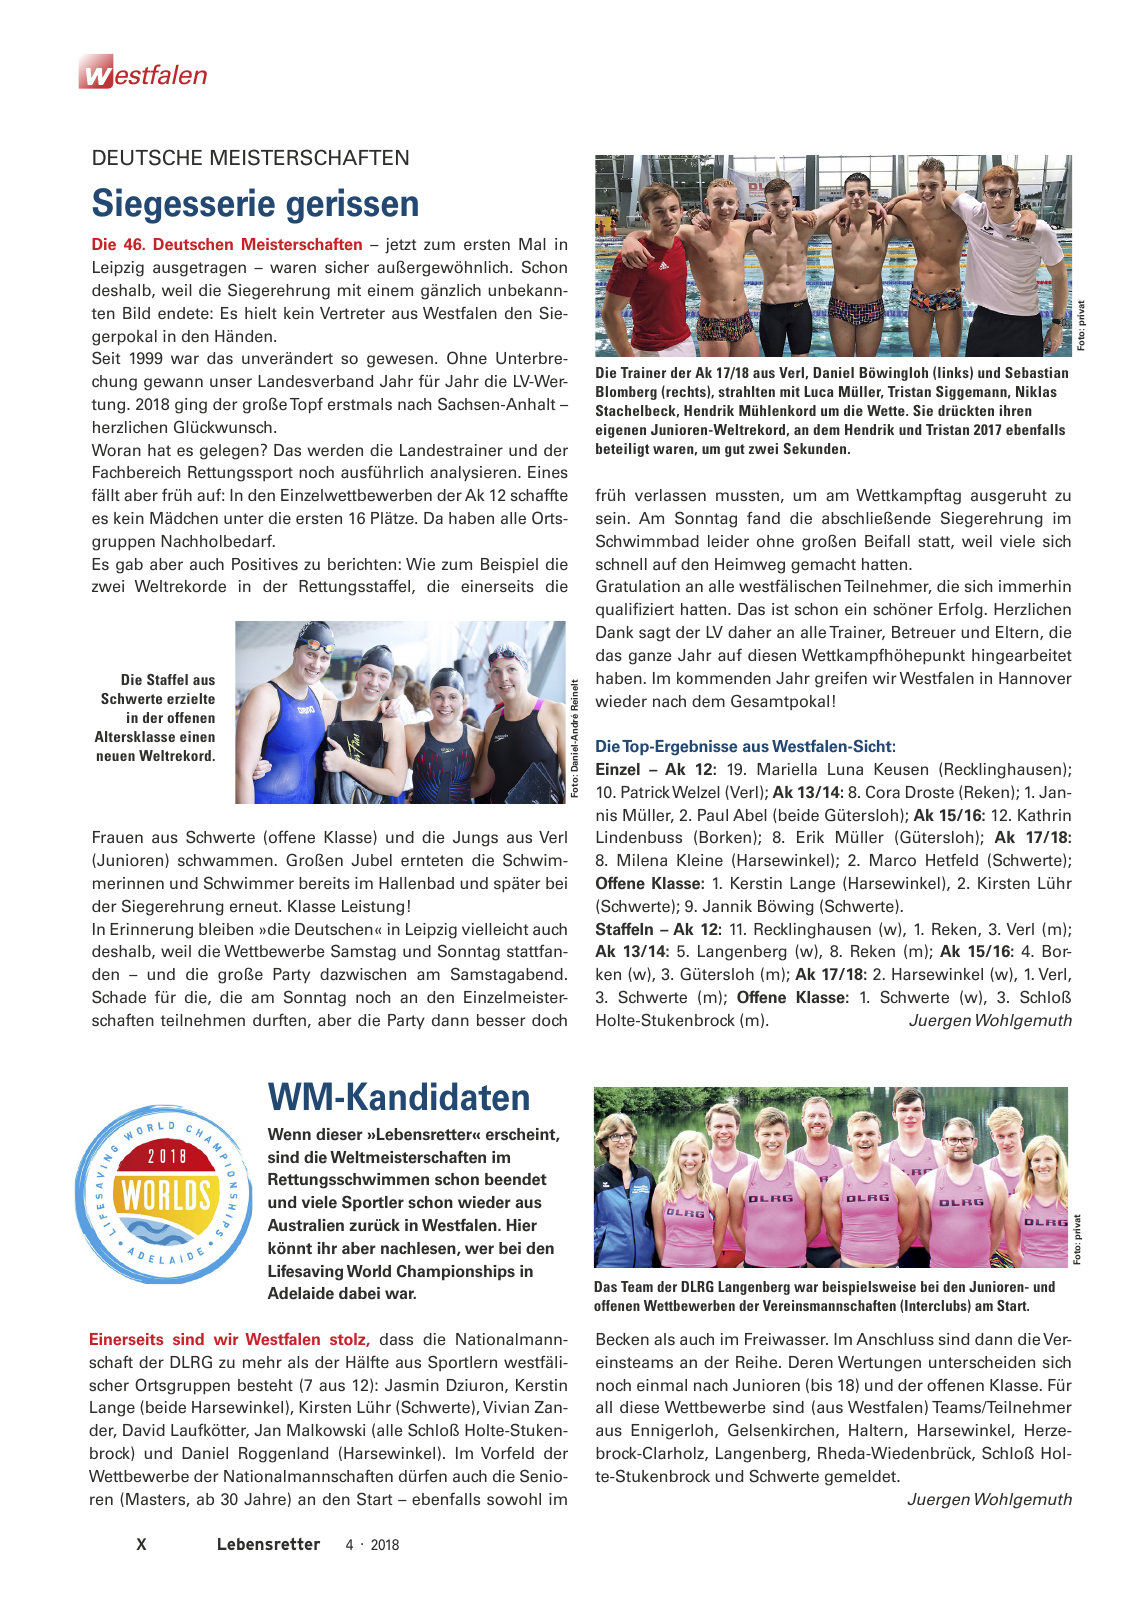 Vorschau Lebensretter 4/2018 - Regionalausgabe Westfalen Seite 12